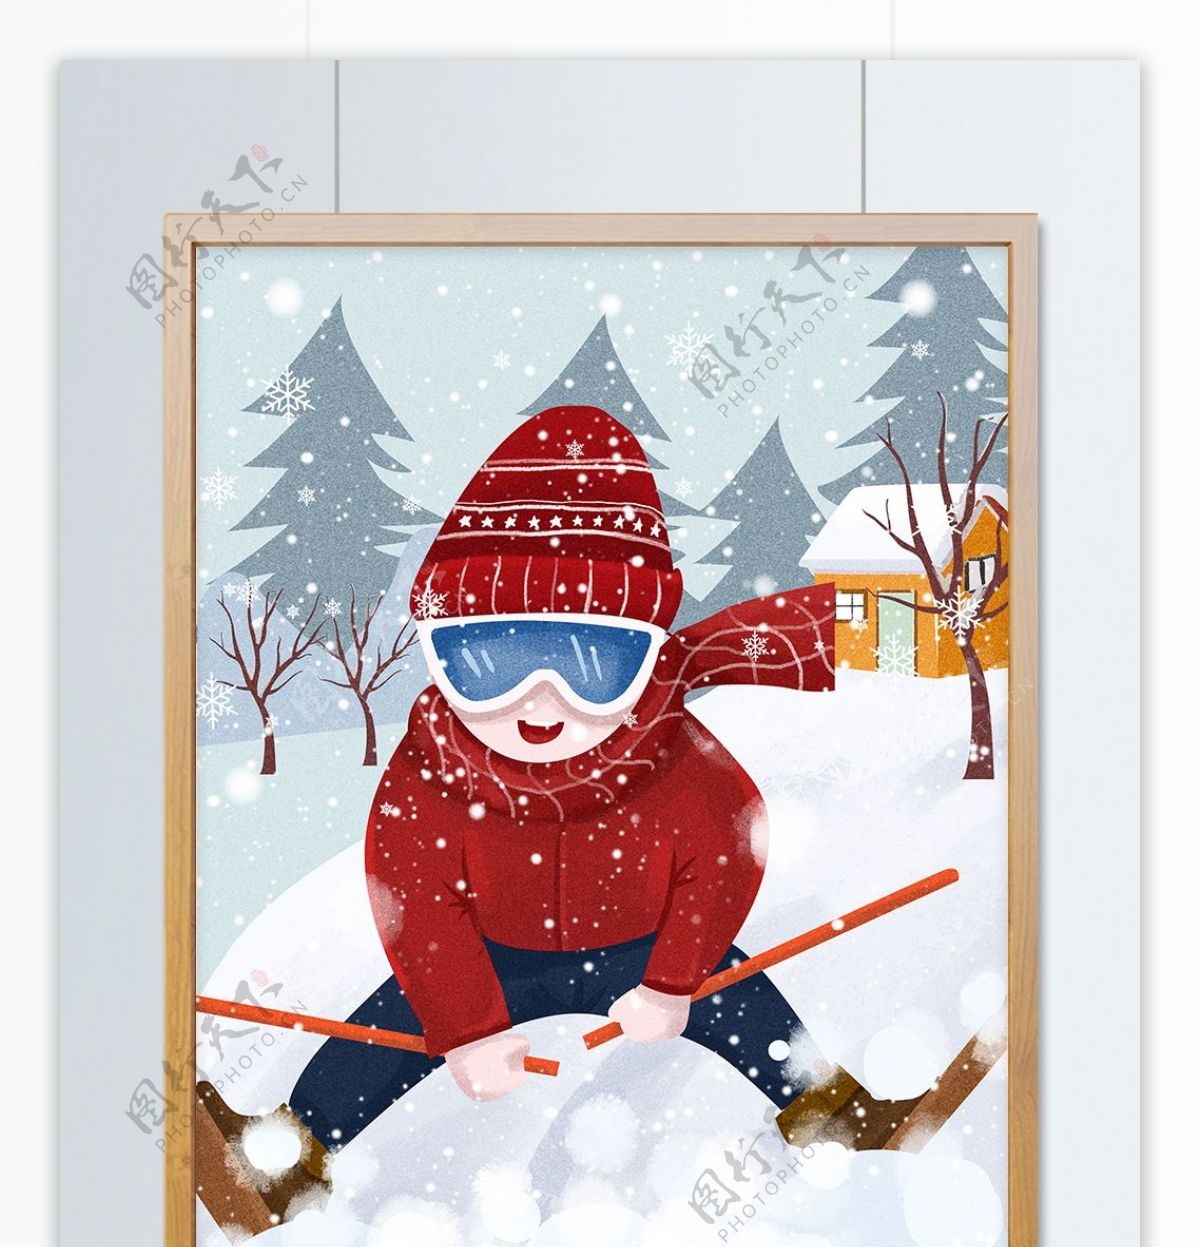 冬日滑雪场景插画